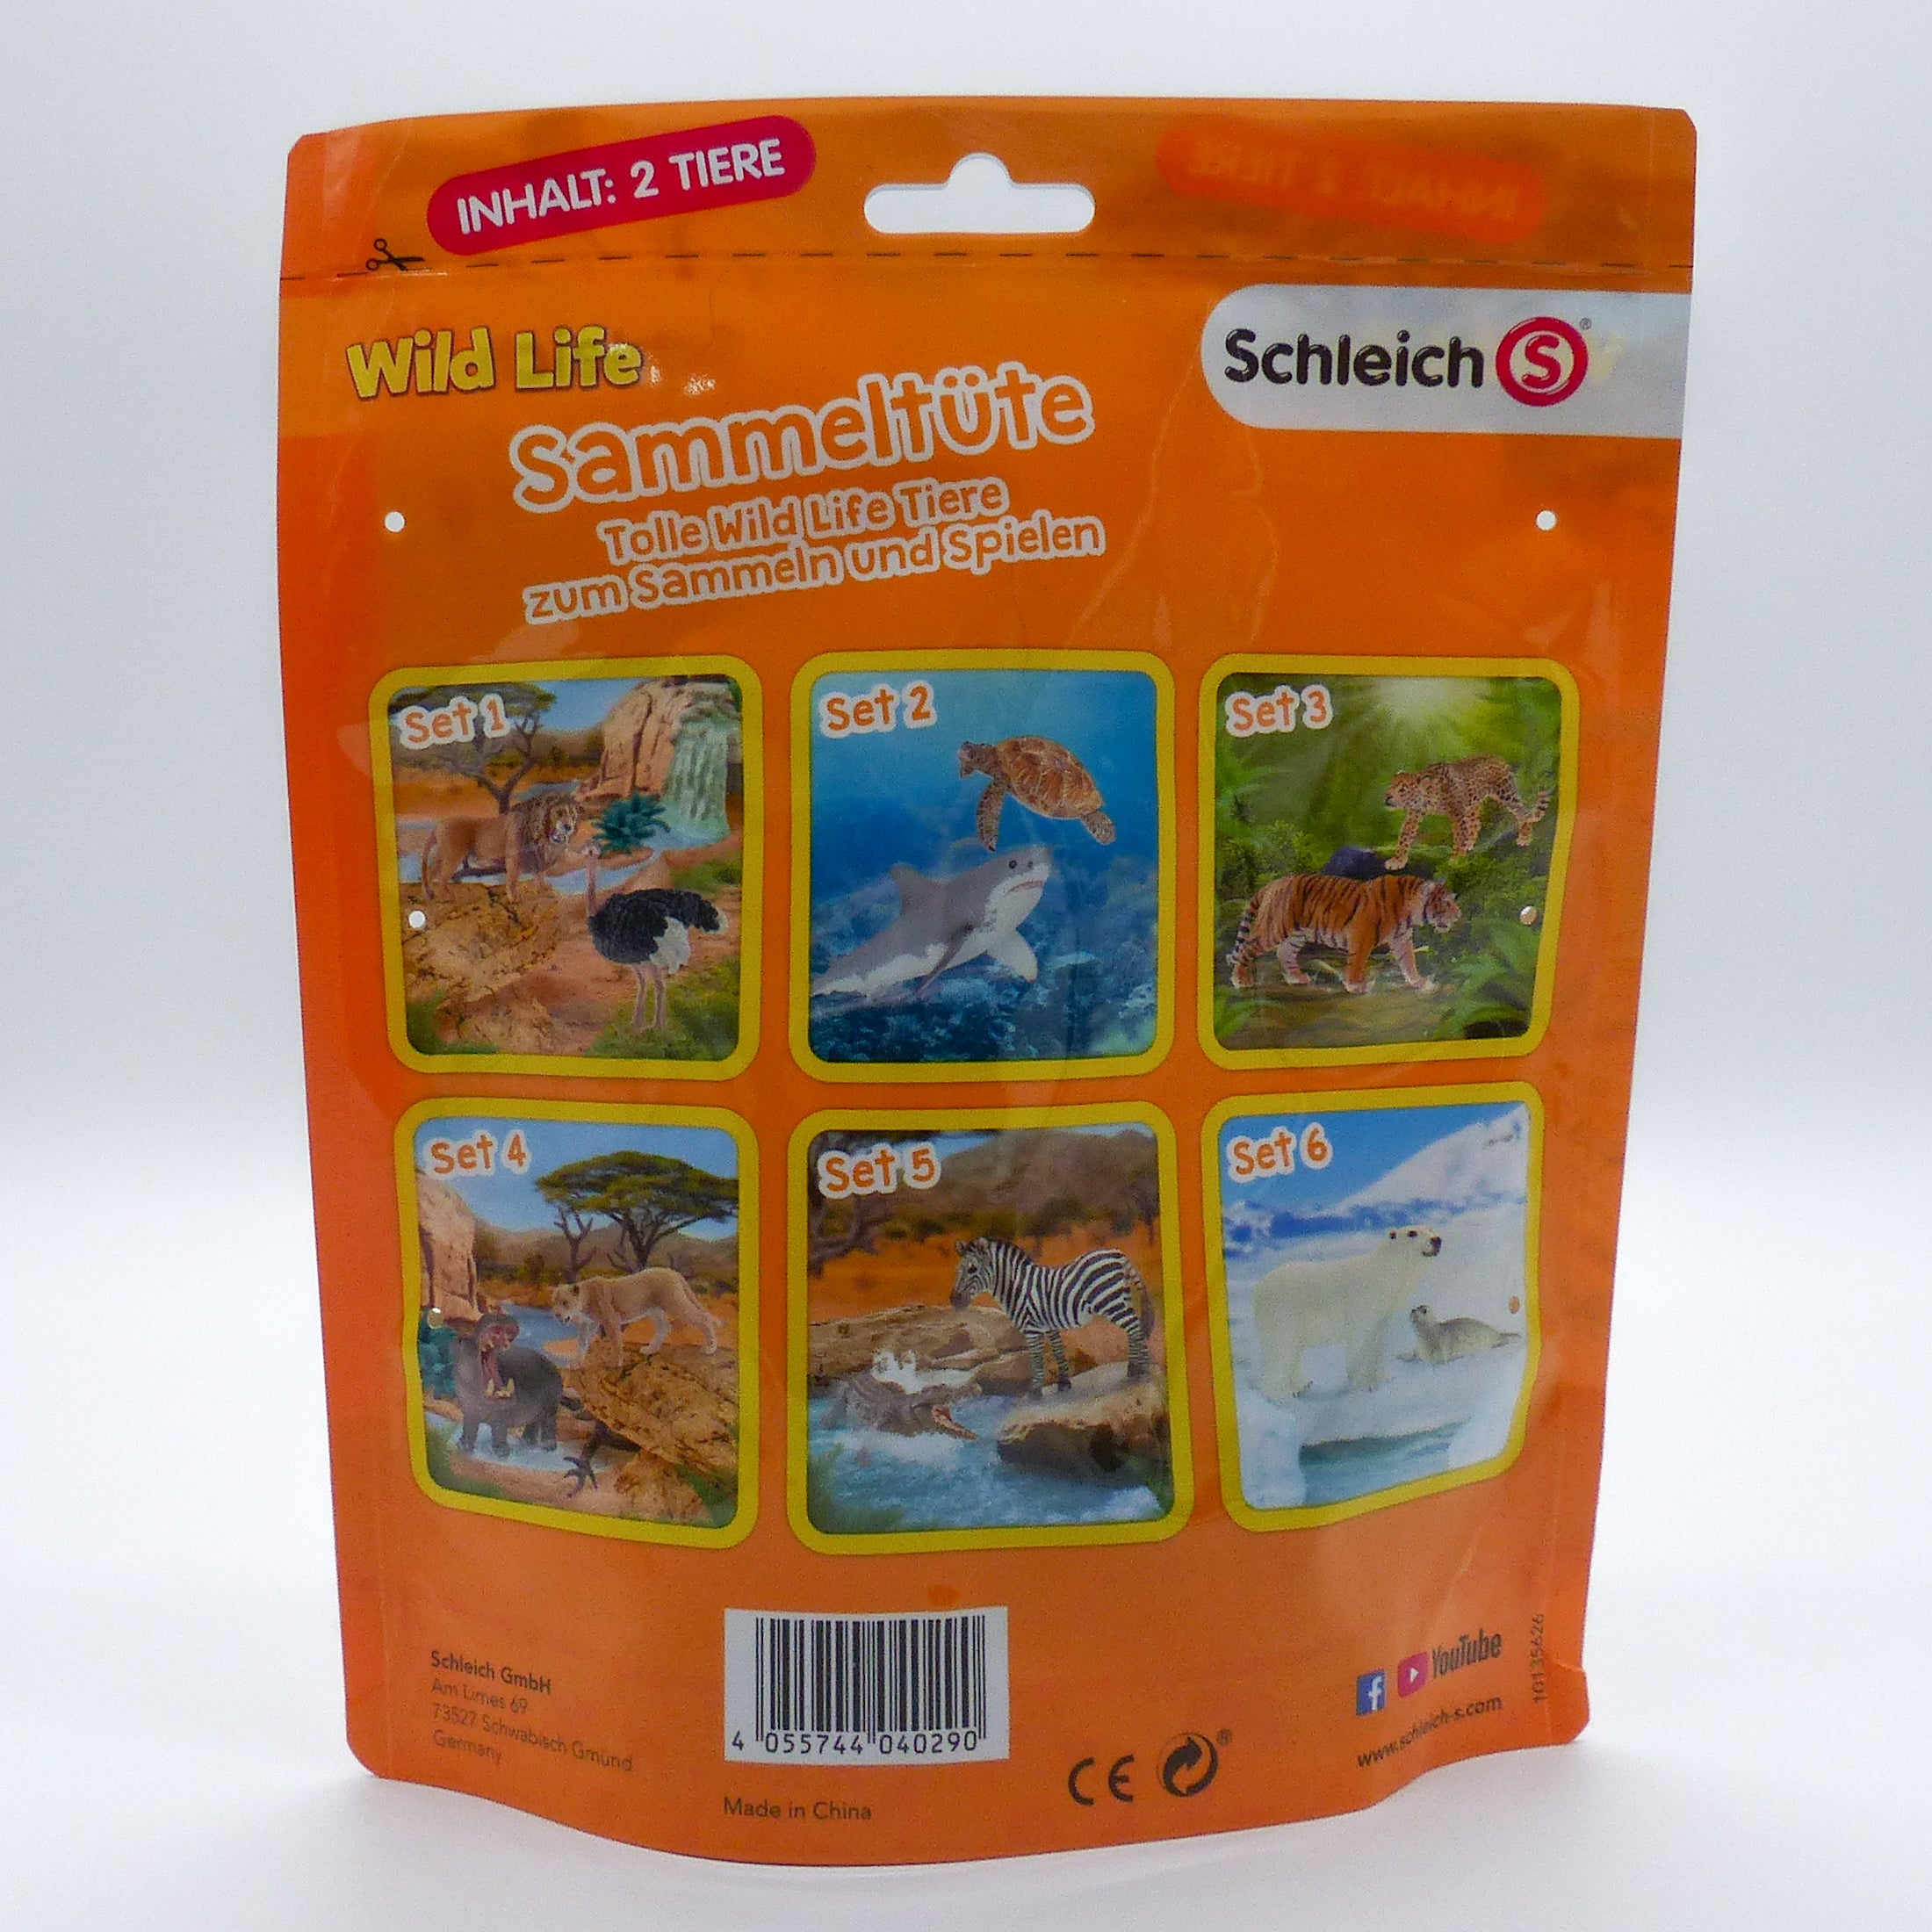 Schleich 87673 Wild Life Sammeltüte Set 1  Schleich   